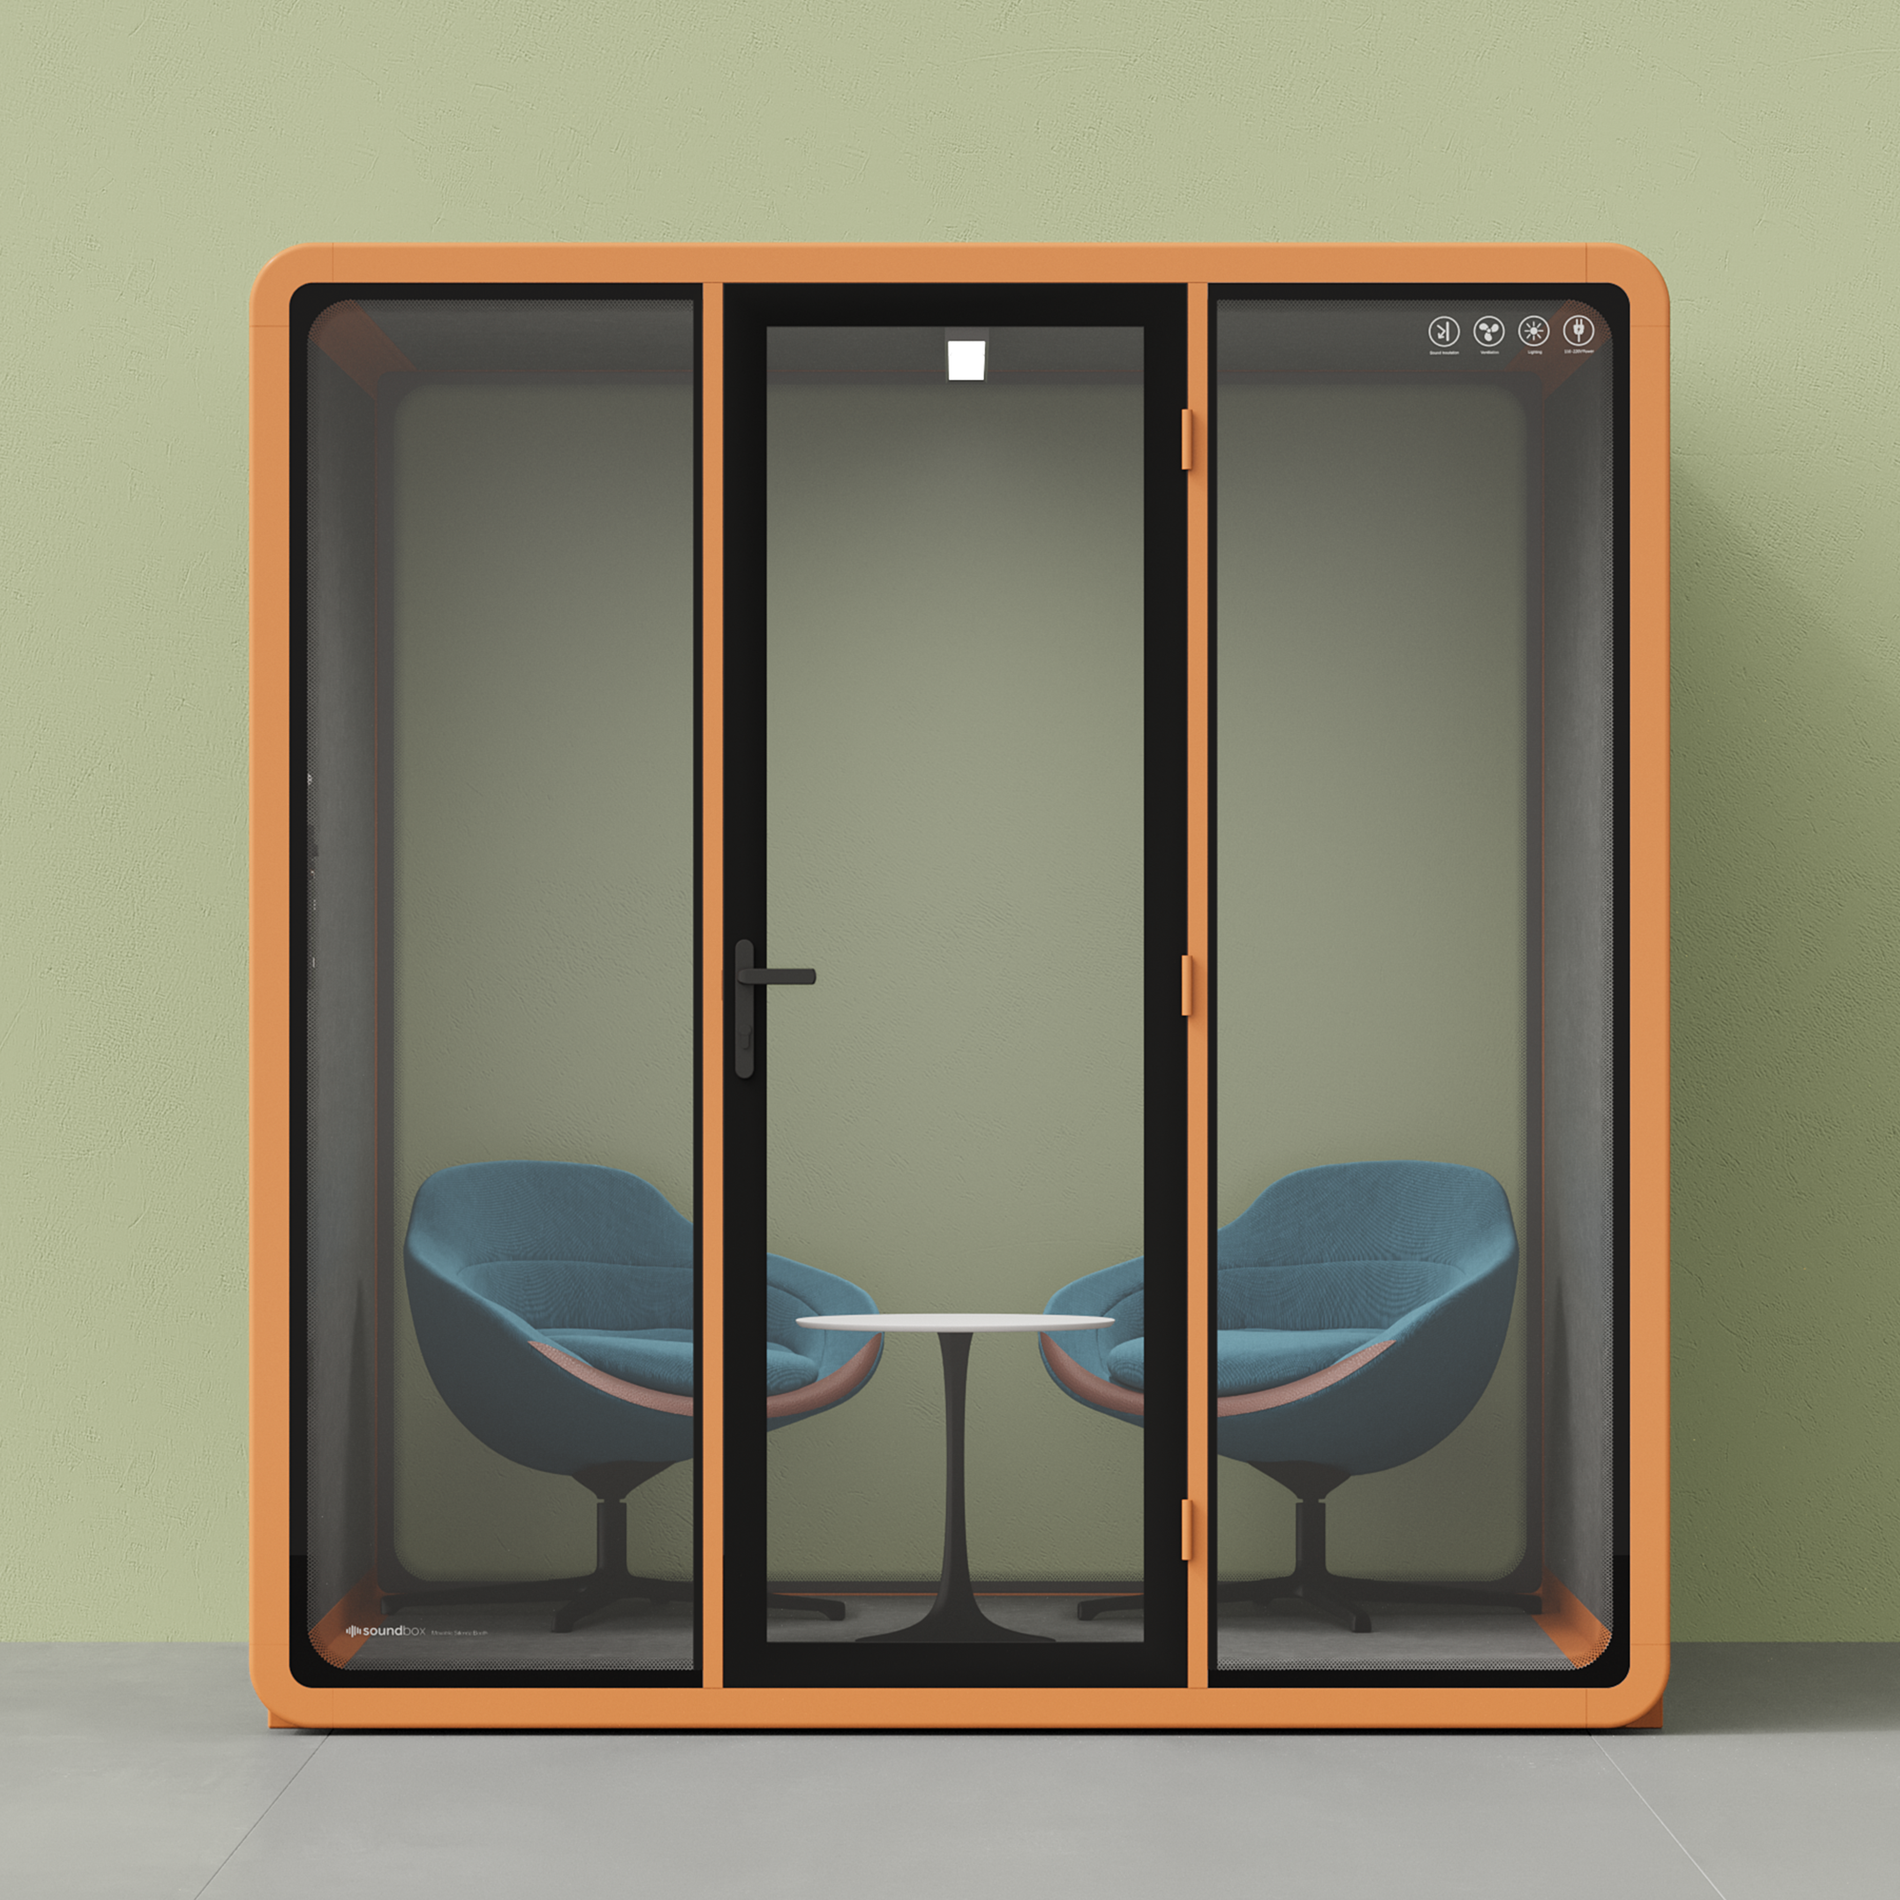 Quell - Coworker - 6 Person Meeting BoothOrange / Dark Grey / Furniture Set 2